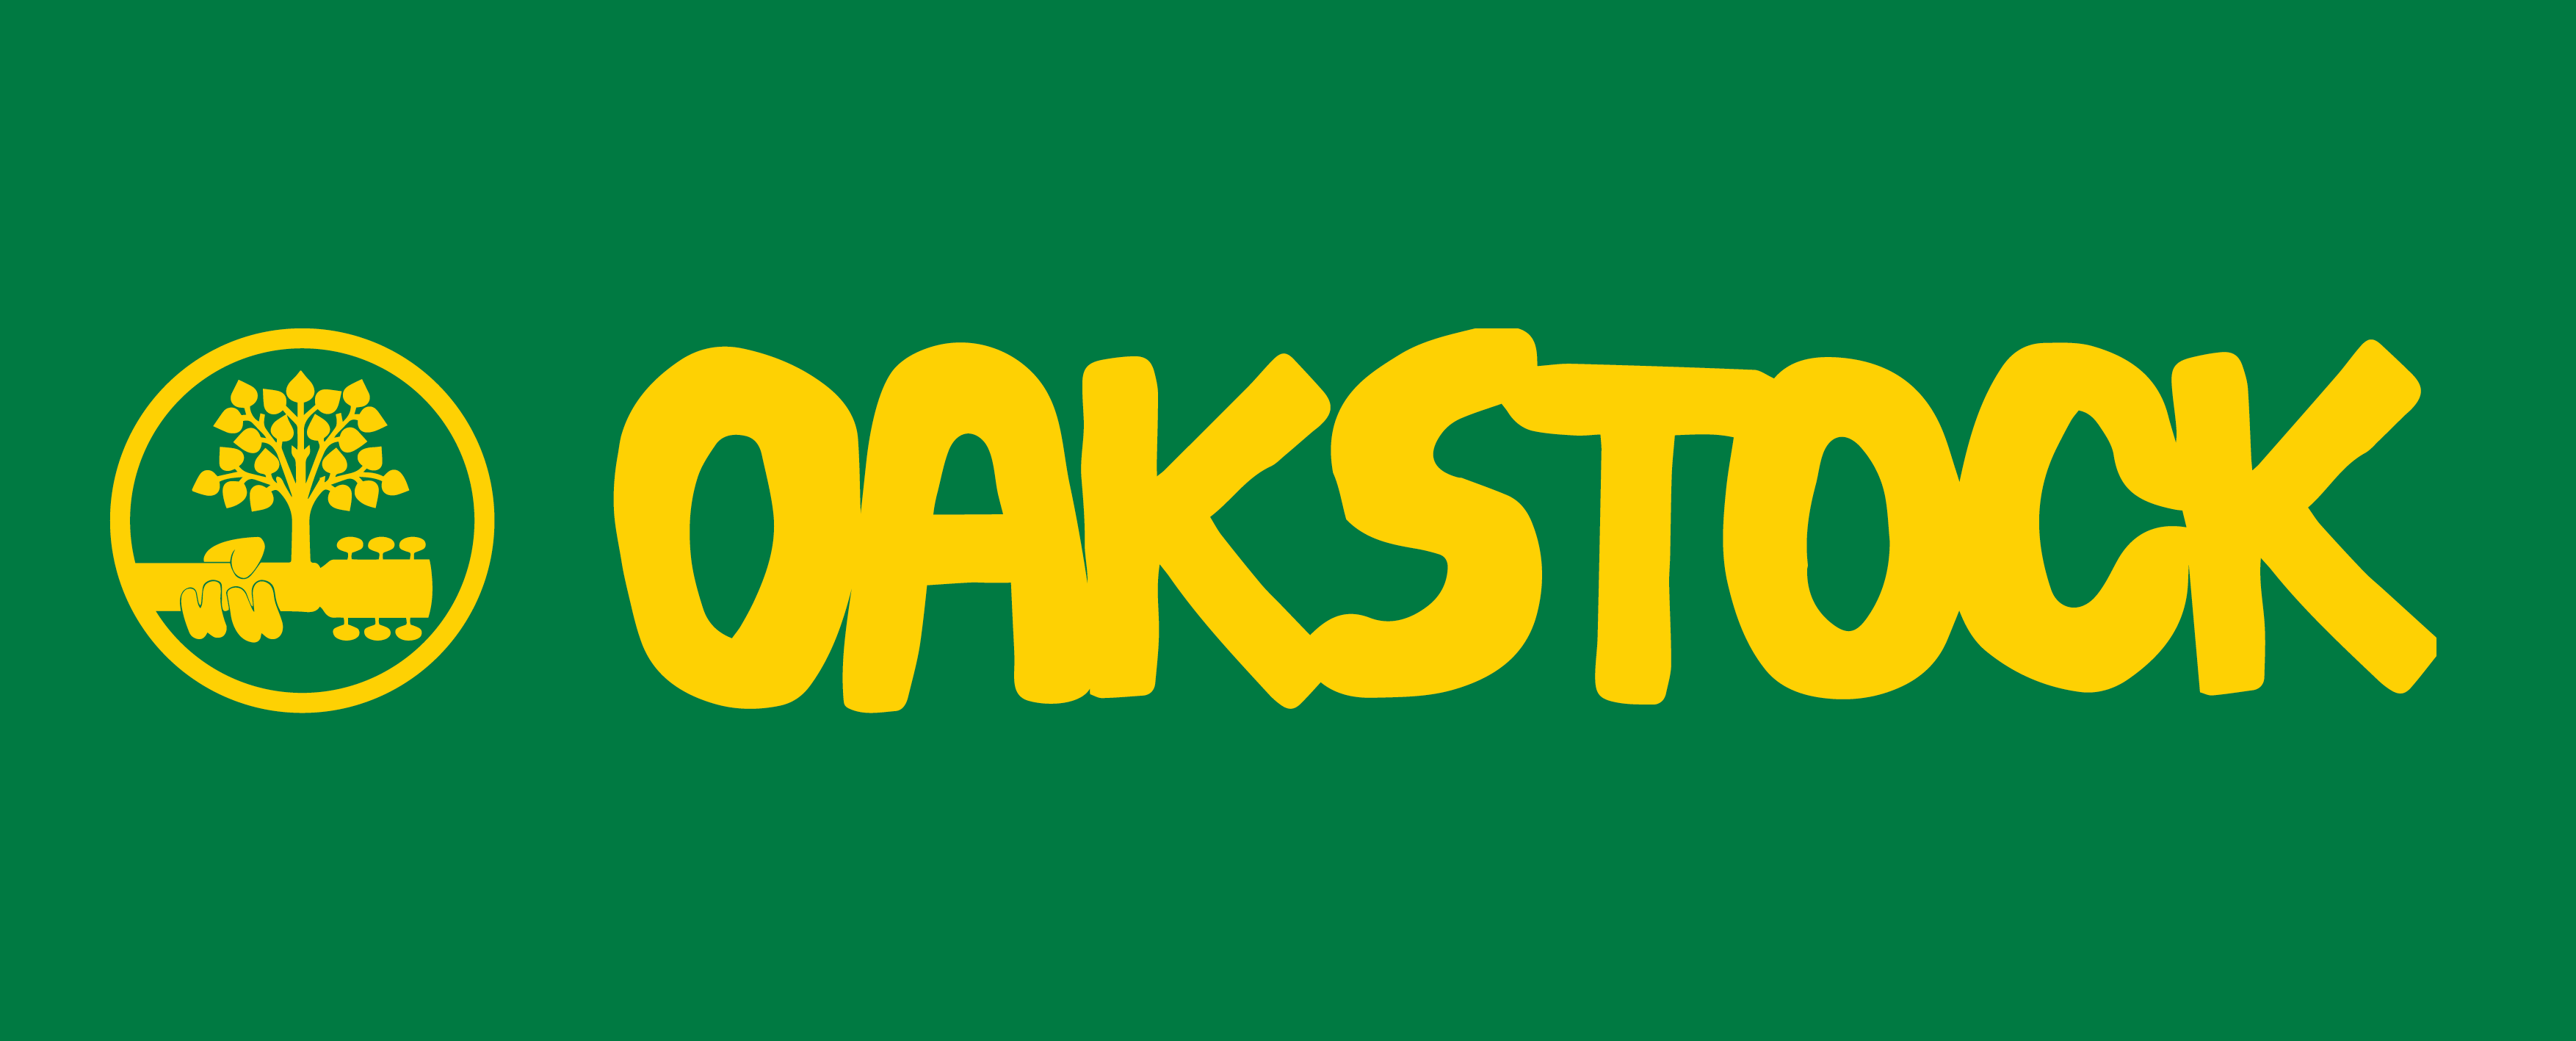 Oakstock banner